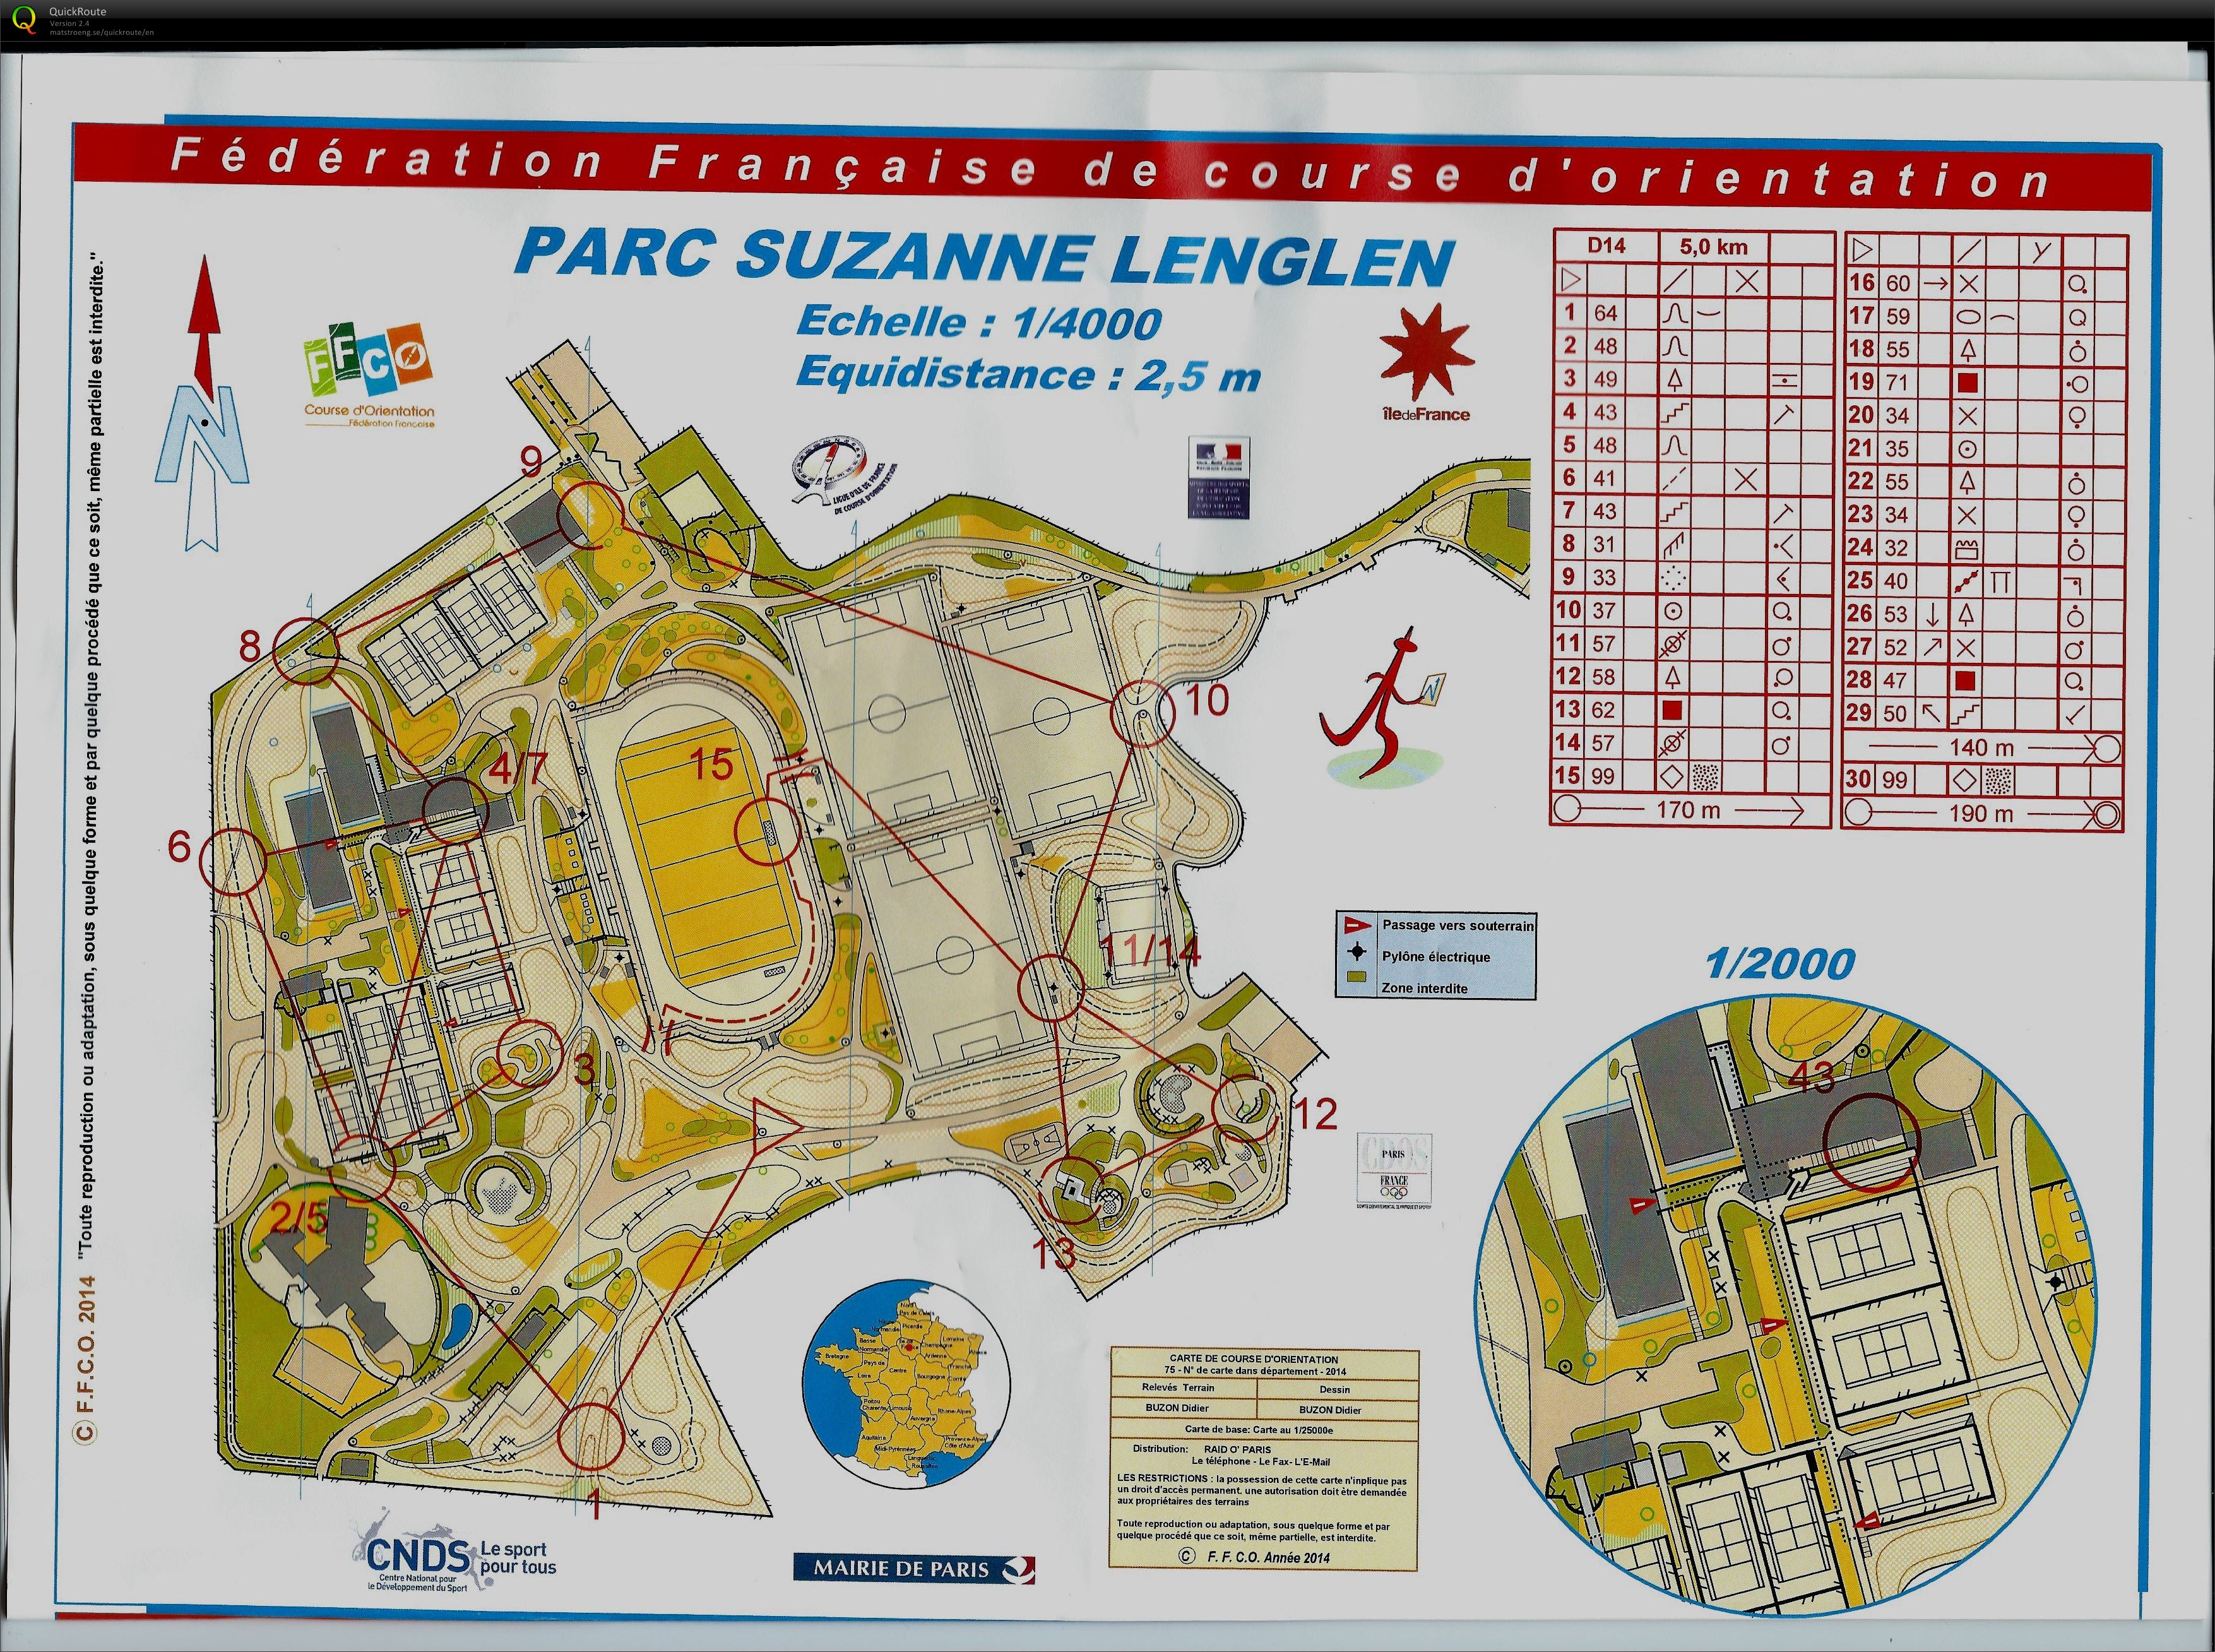 Parc Suzanne Lenglen (28.09.2014)